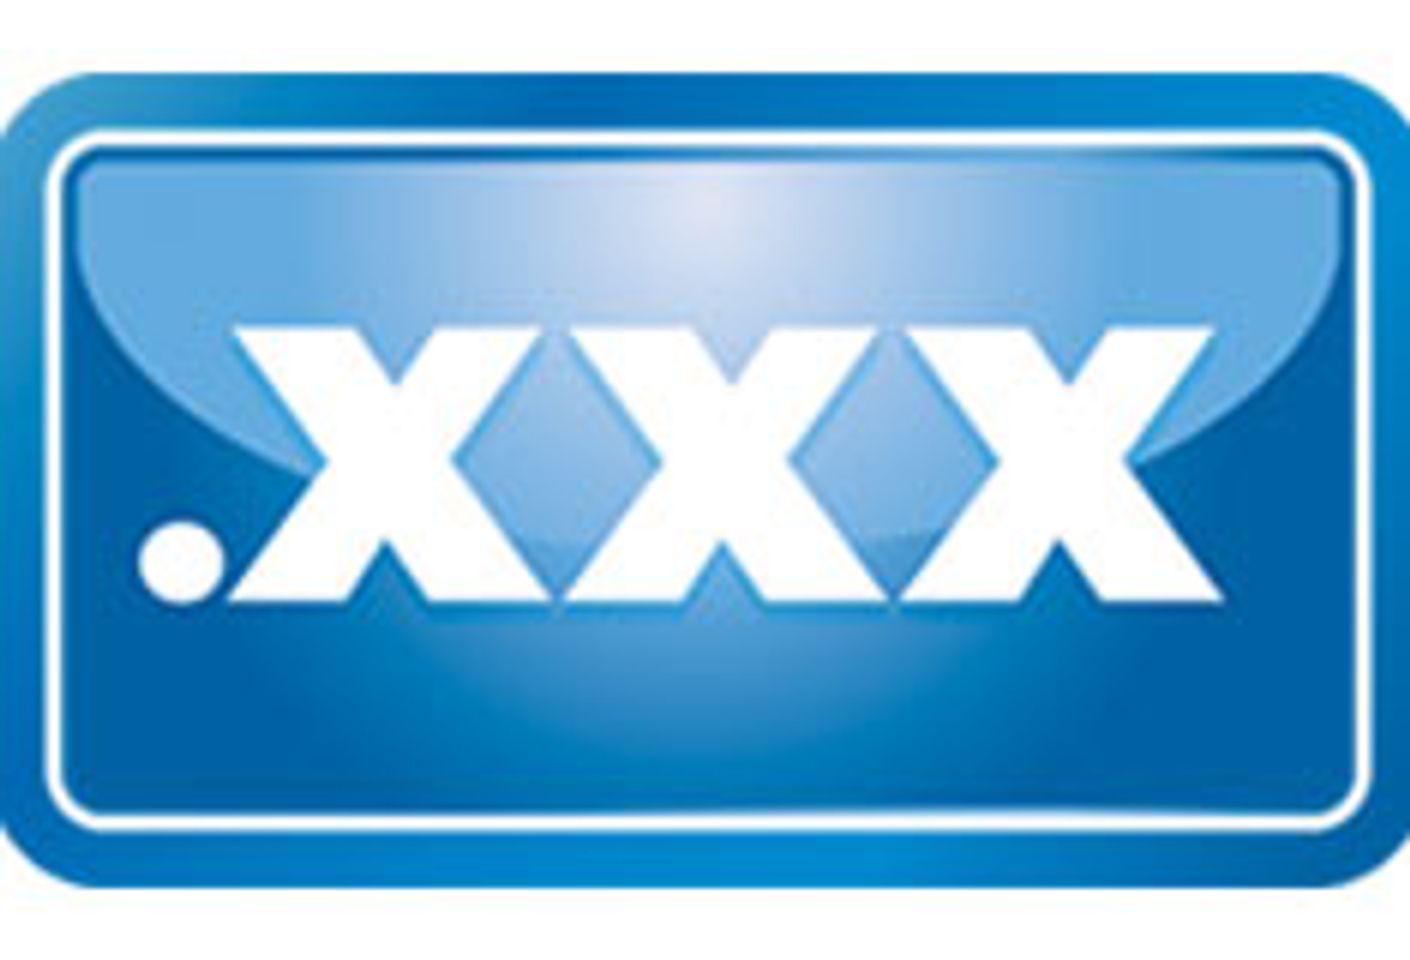 .XXX is Upcoming Sydney Sexpo Sponsor